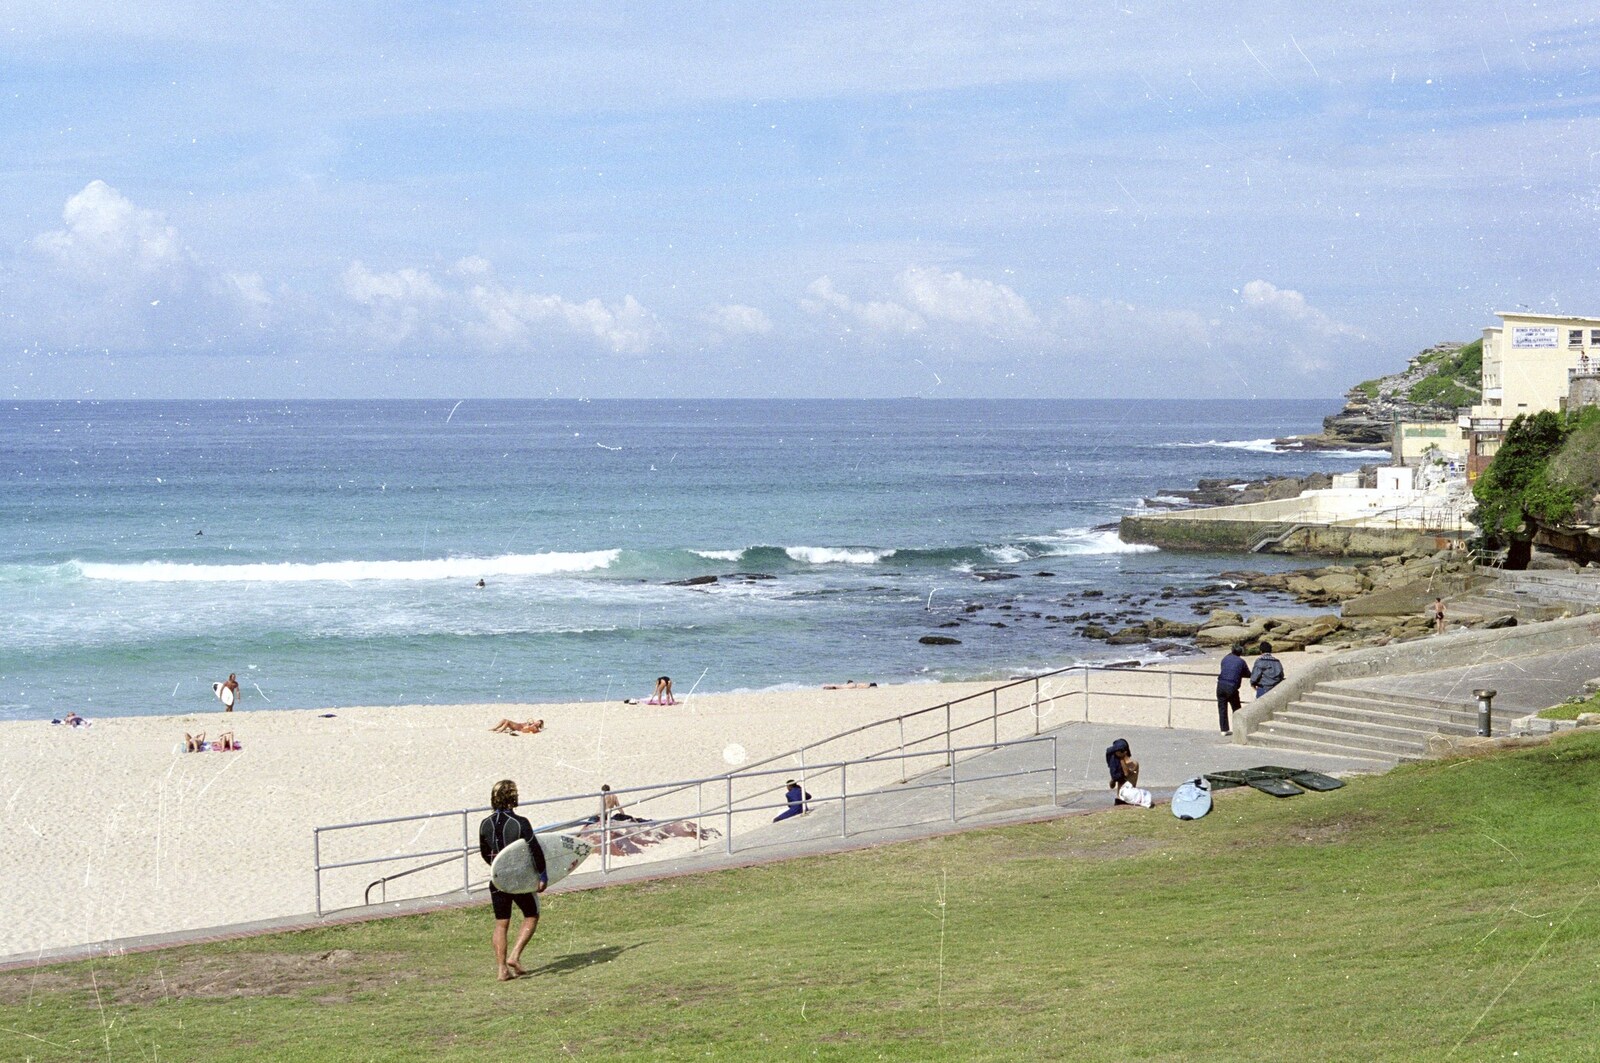 Bondi beach from Sydney Triathlon, Sydney, Australia - 16th April 2000